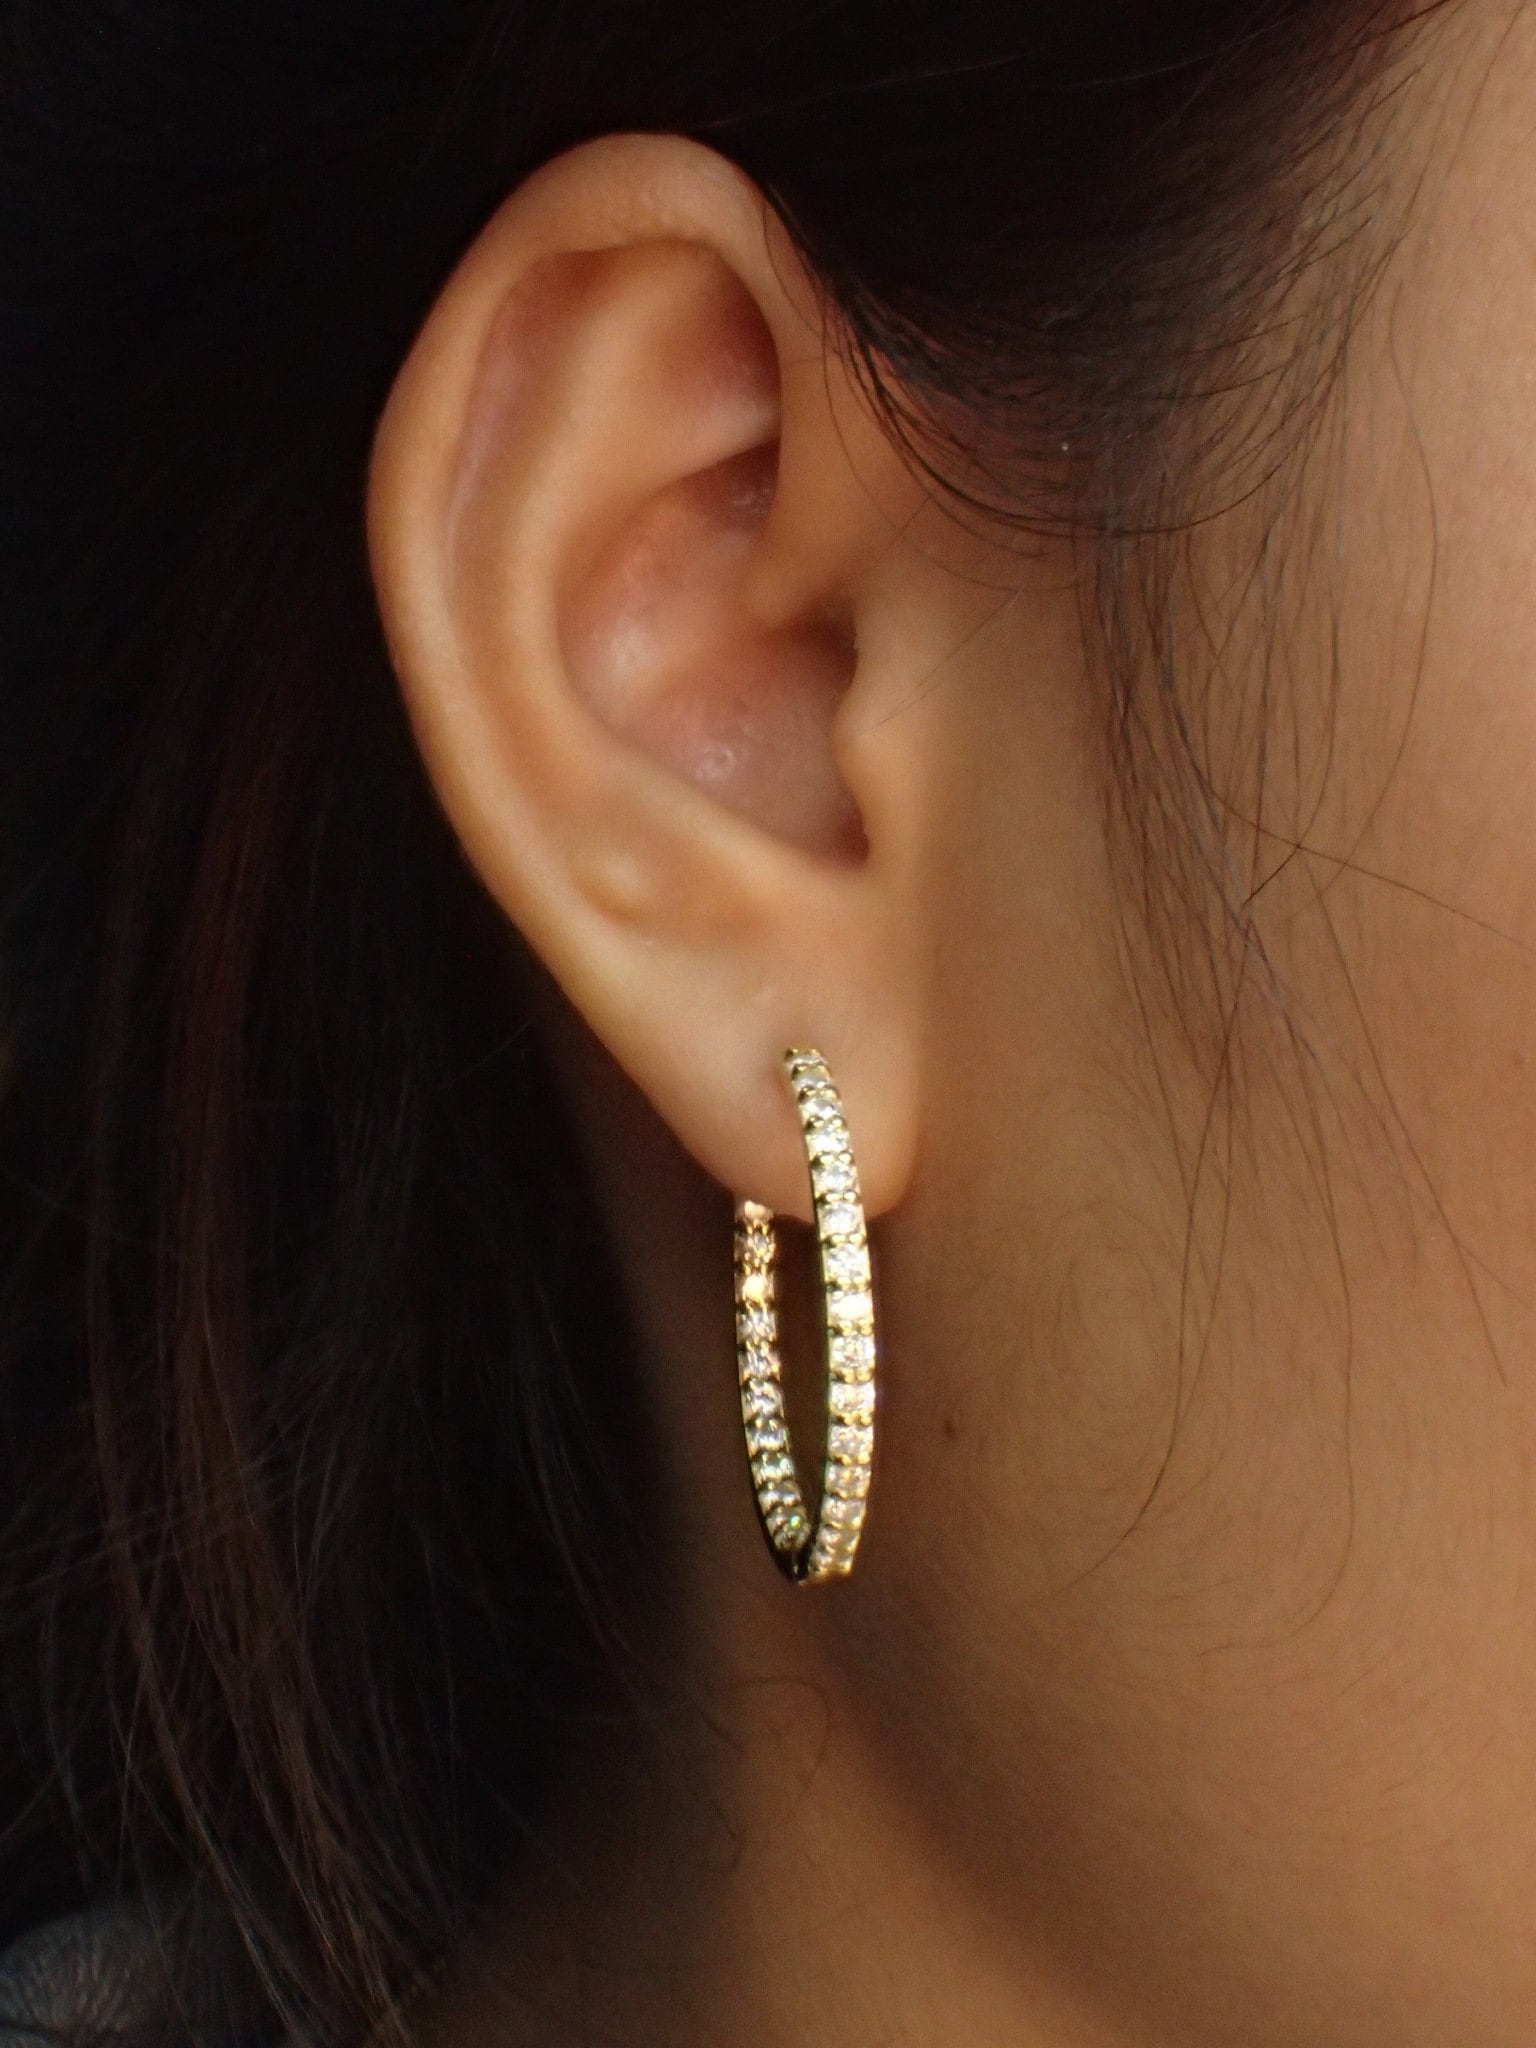 Simulated Diamonds Hoop Earrings / 925 Sterling Silver | Etsy